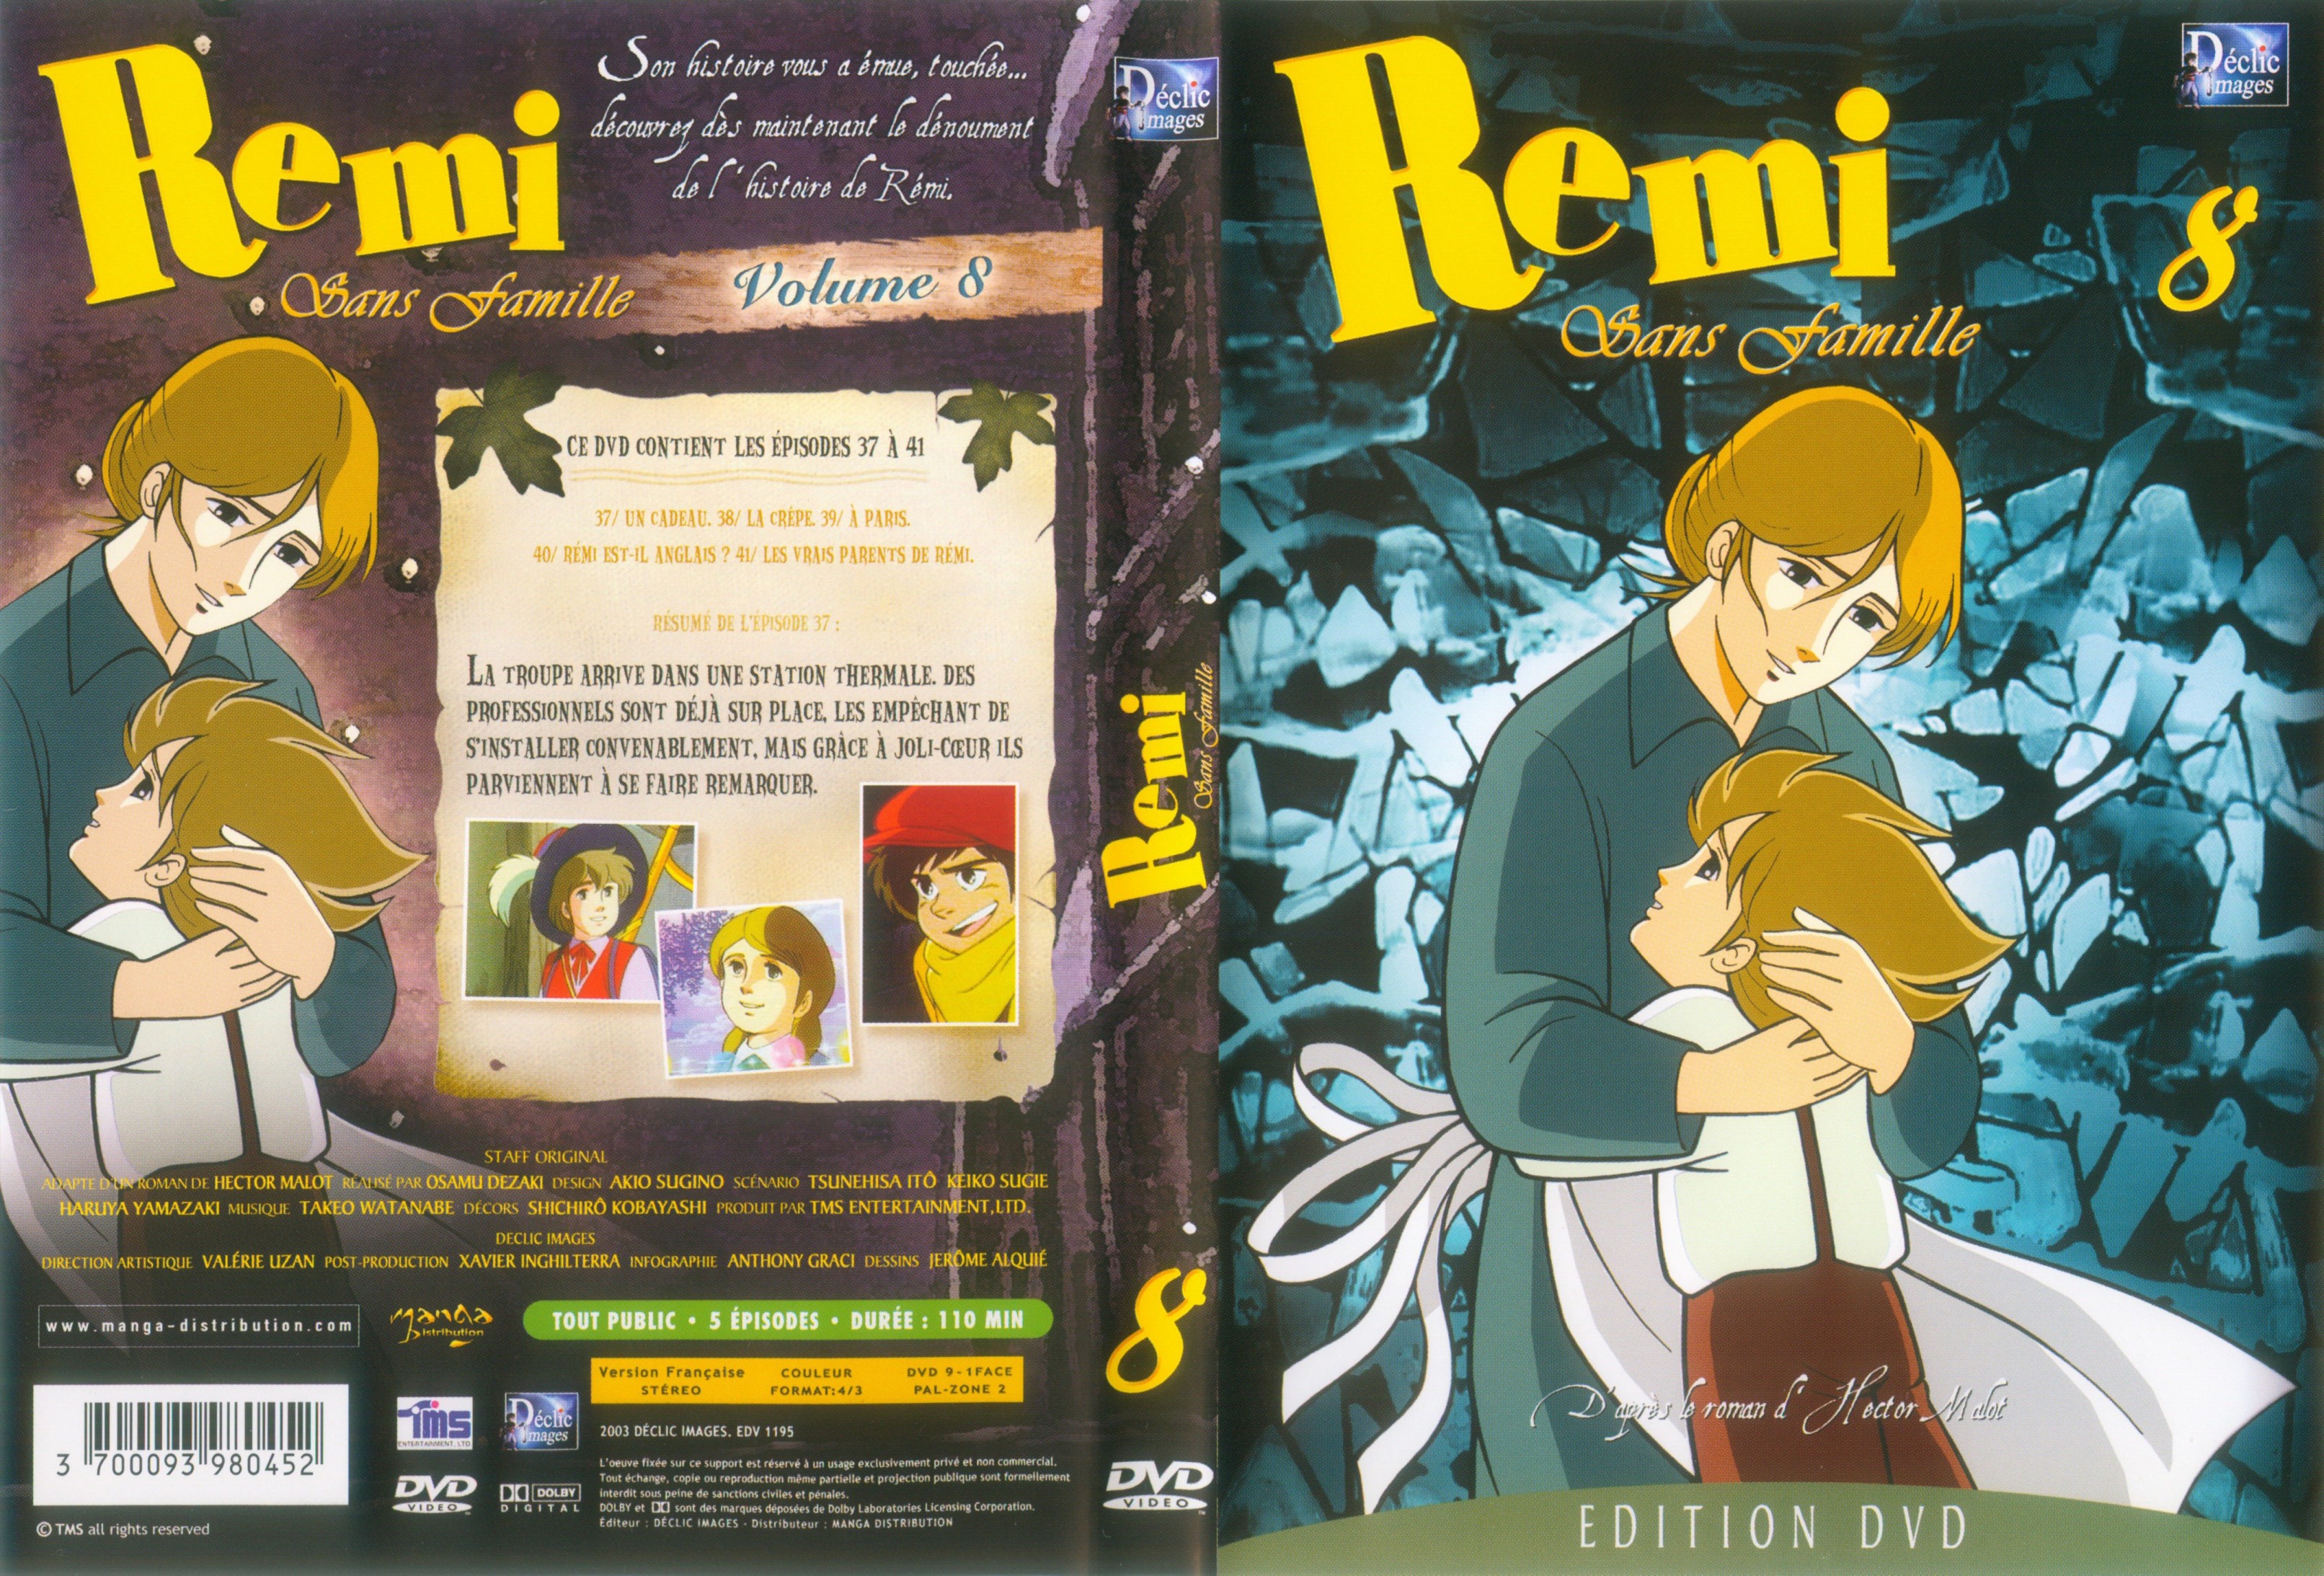 Jaquette DVD Remi sans famille vol 08